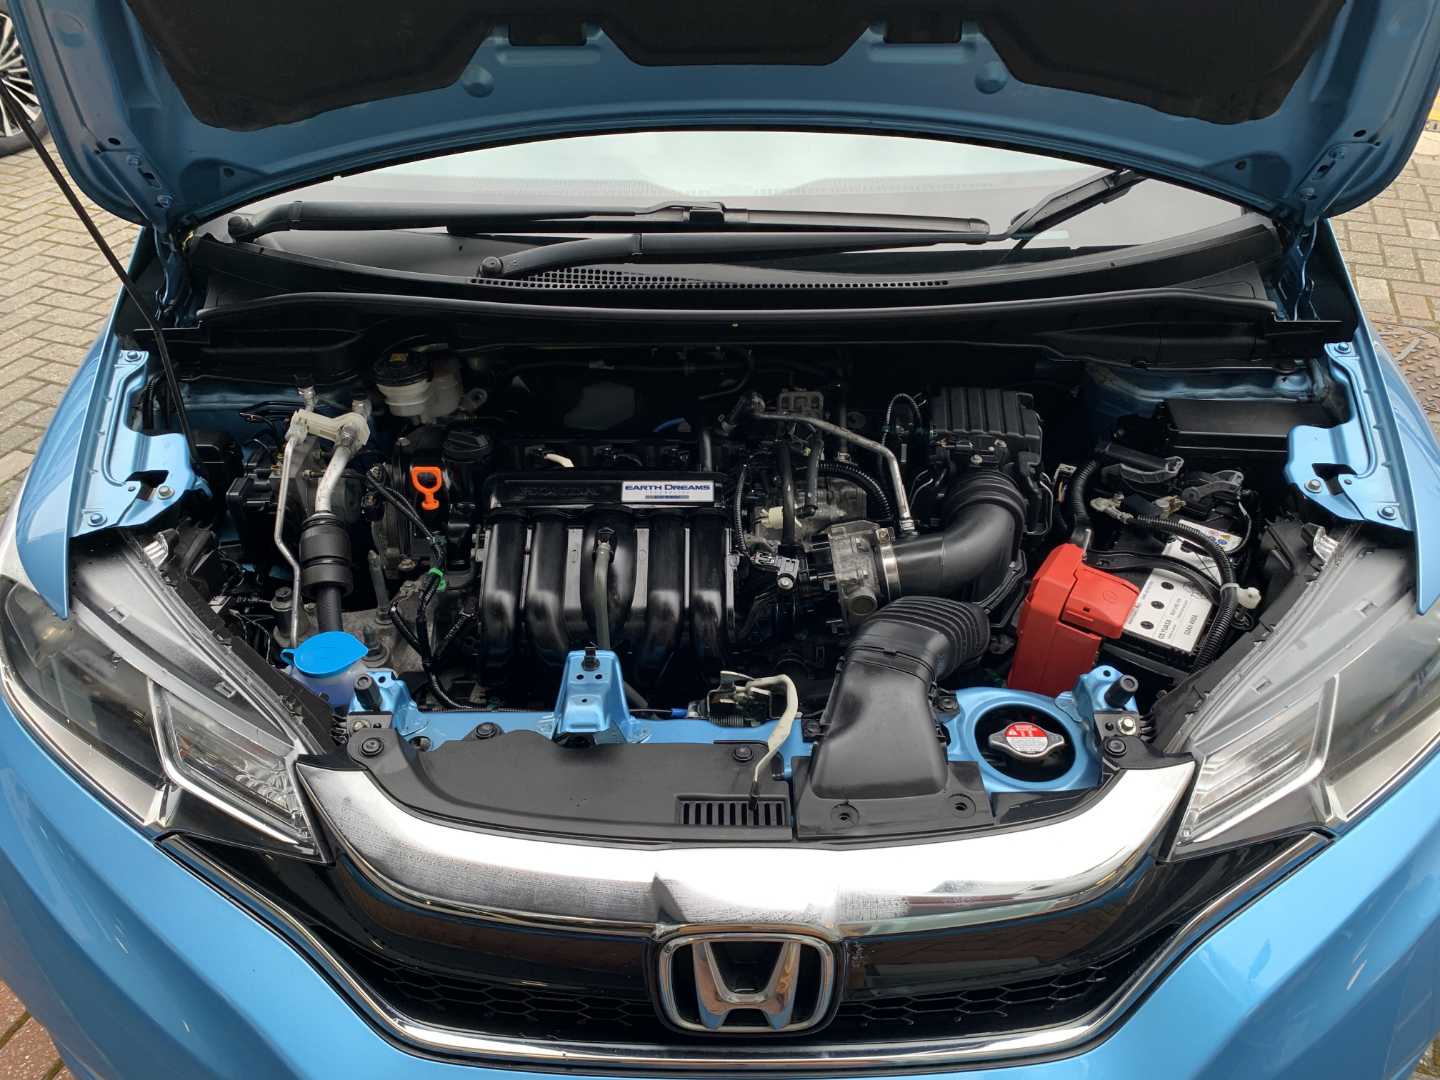 Honda JAZZ 1.3 i-VTEC SE Navi 5dr CVT - Image 20